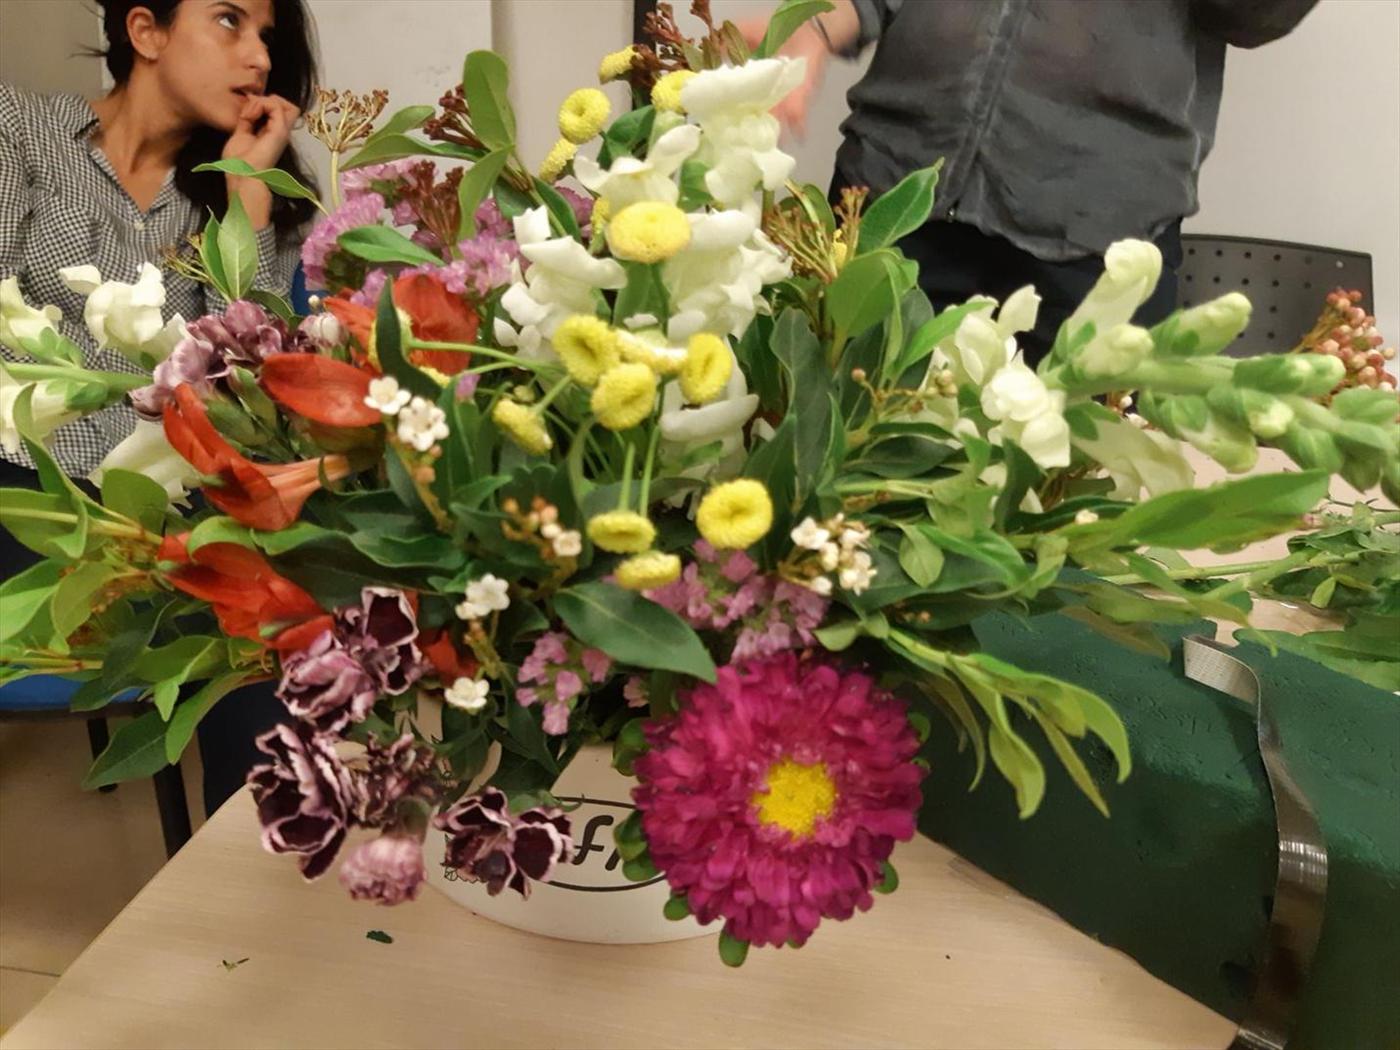 גלרייה - שיעור שזירת פרחים - קורס ניהול והפקת אירועים מחזור 19 , 8 מתוך 20